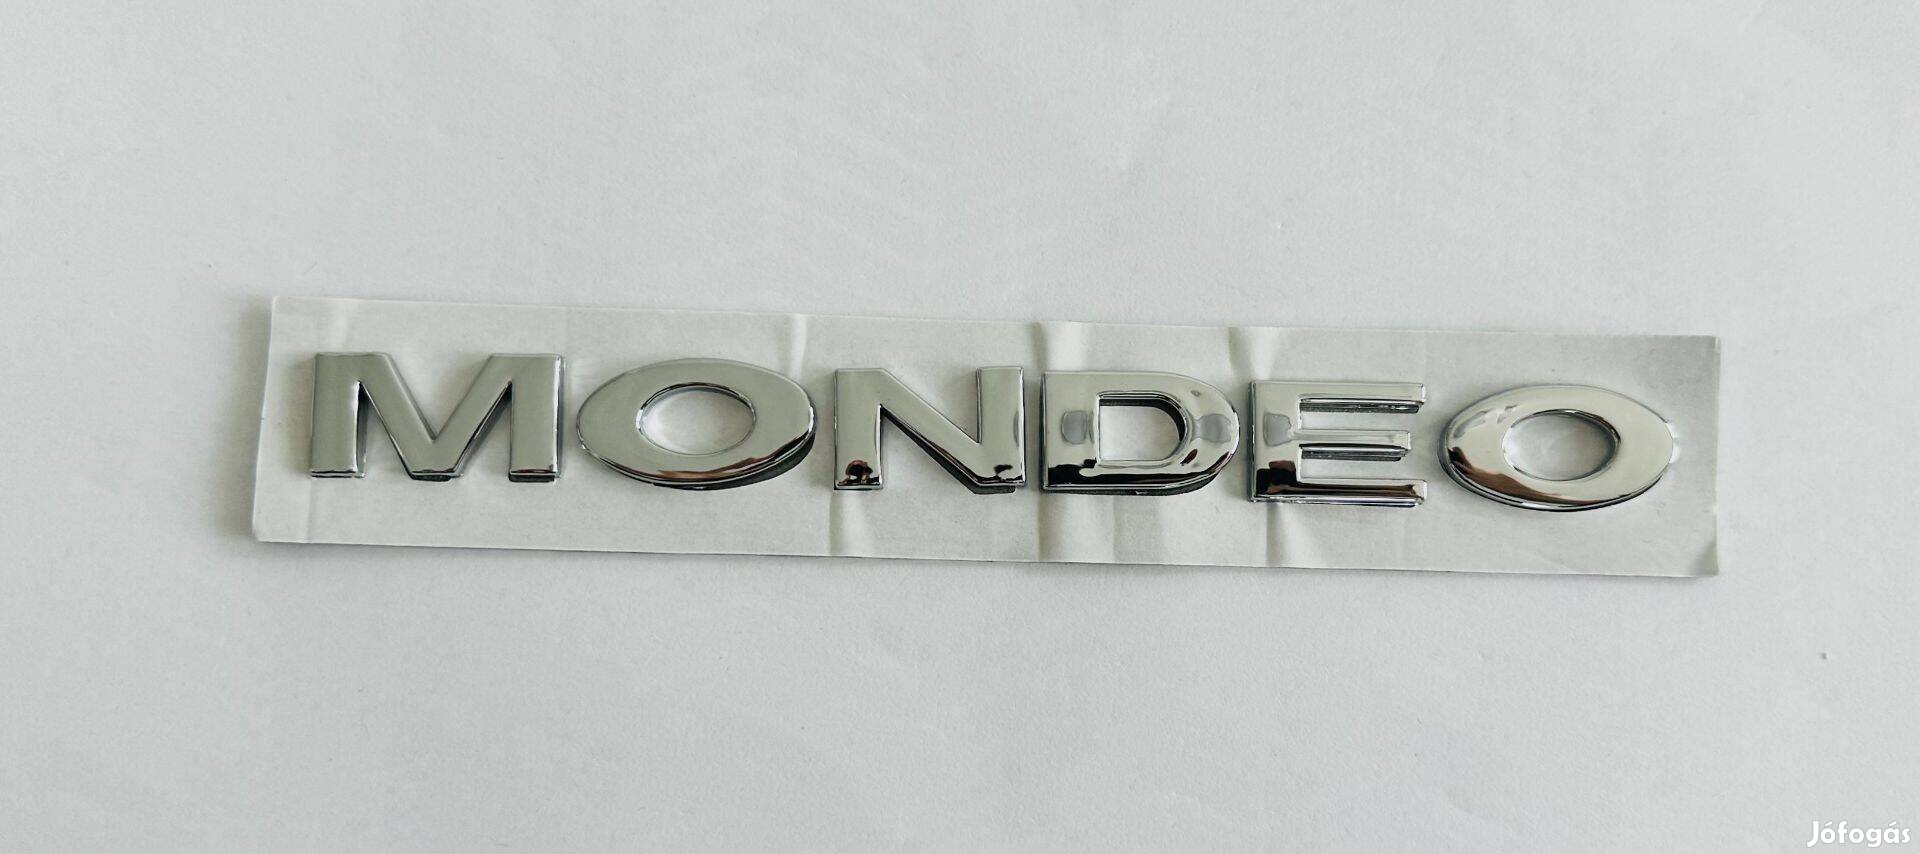 Új Ford Mondeo felirat embléma jel logó kiegészítő gépház csomagtér